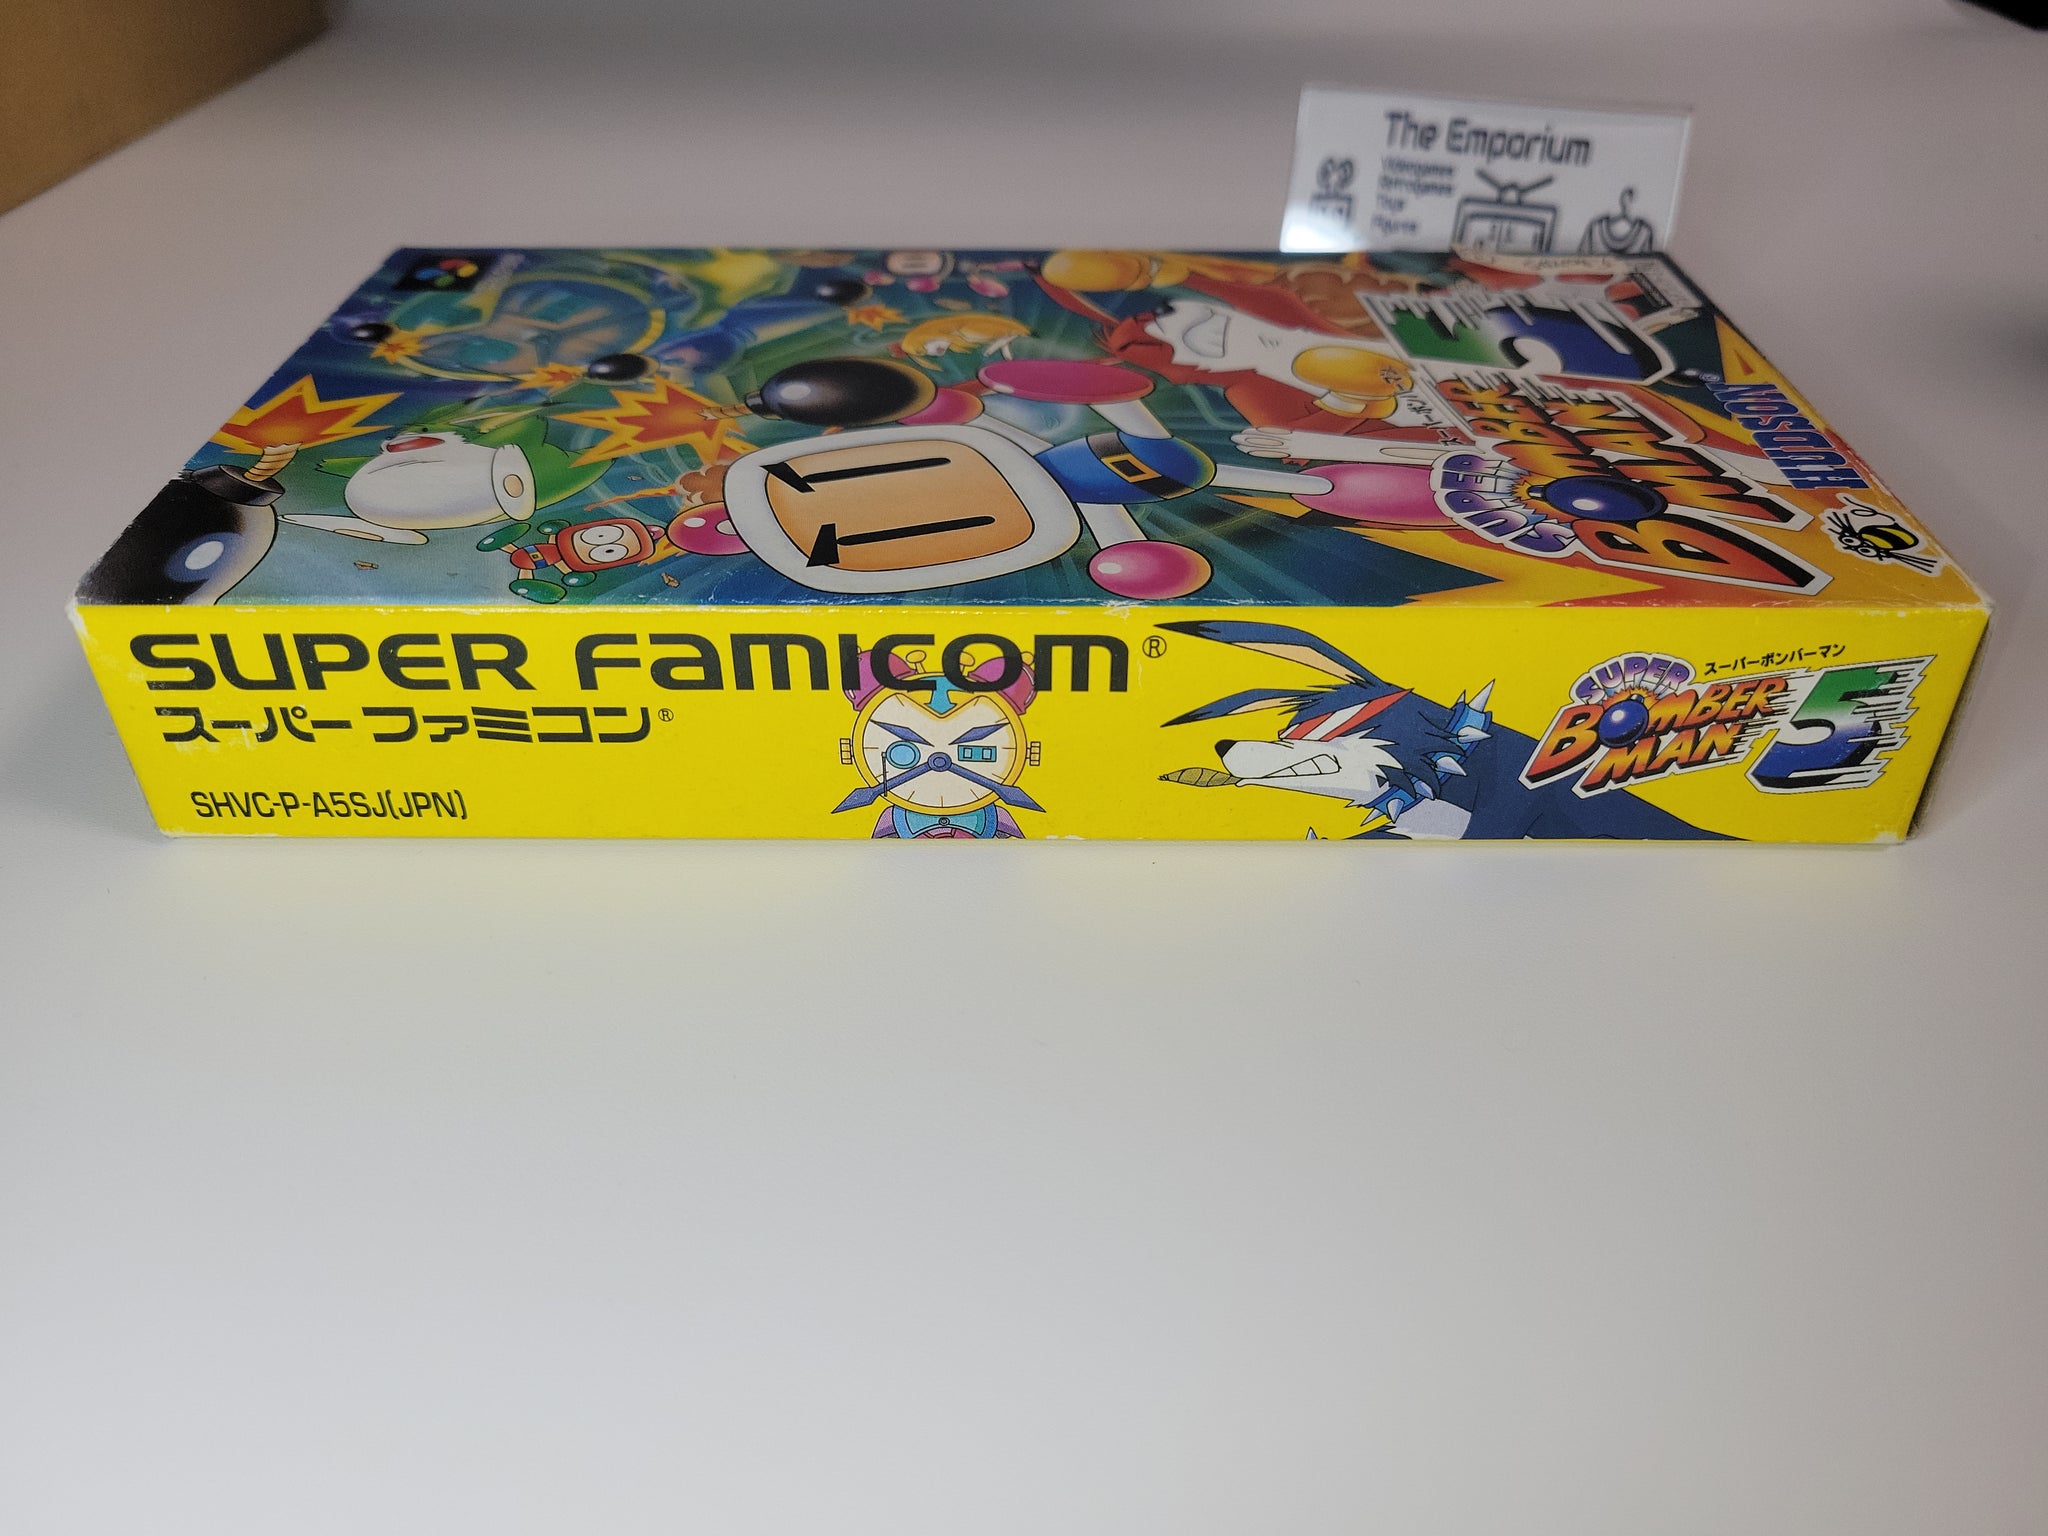 Super Bomberman 5 - Nintendo Sfc Super Famicom – The Emporium